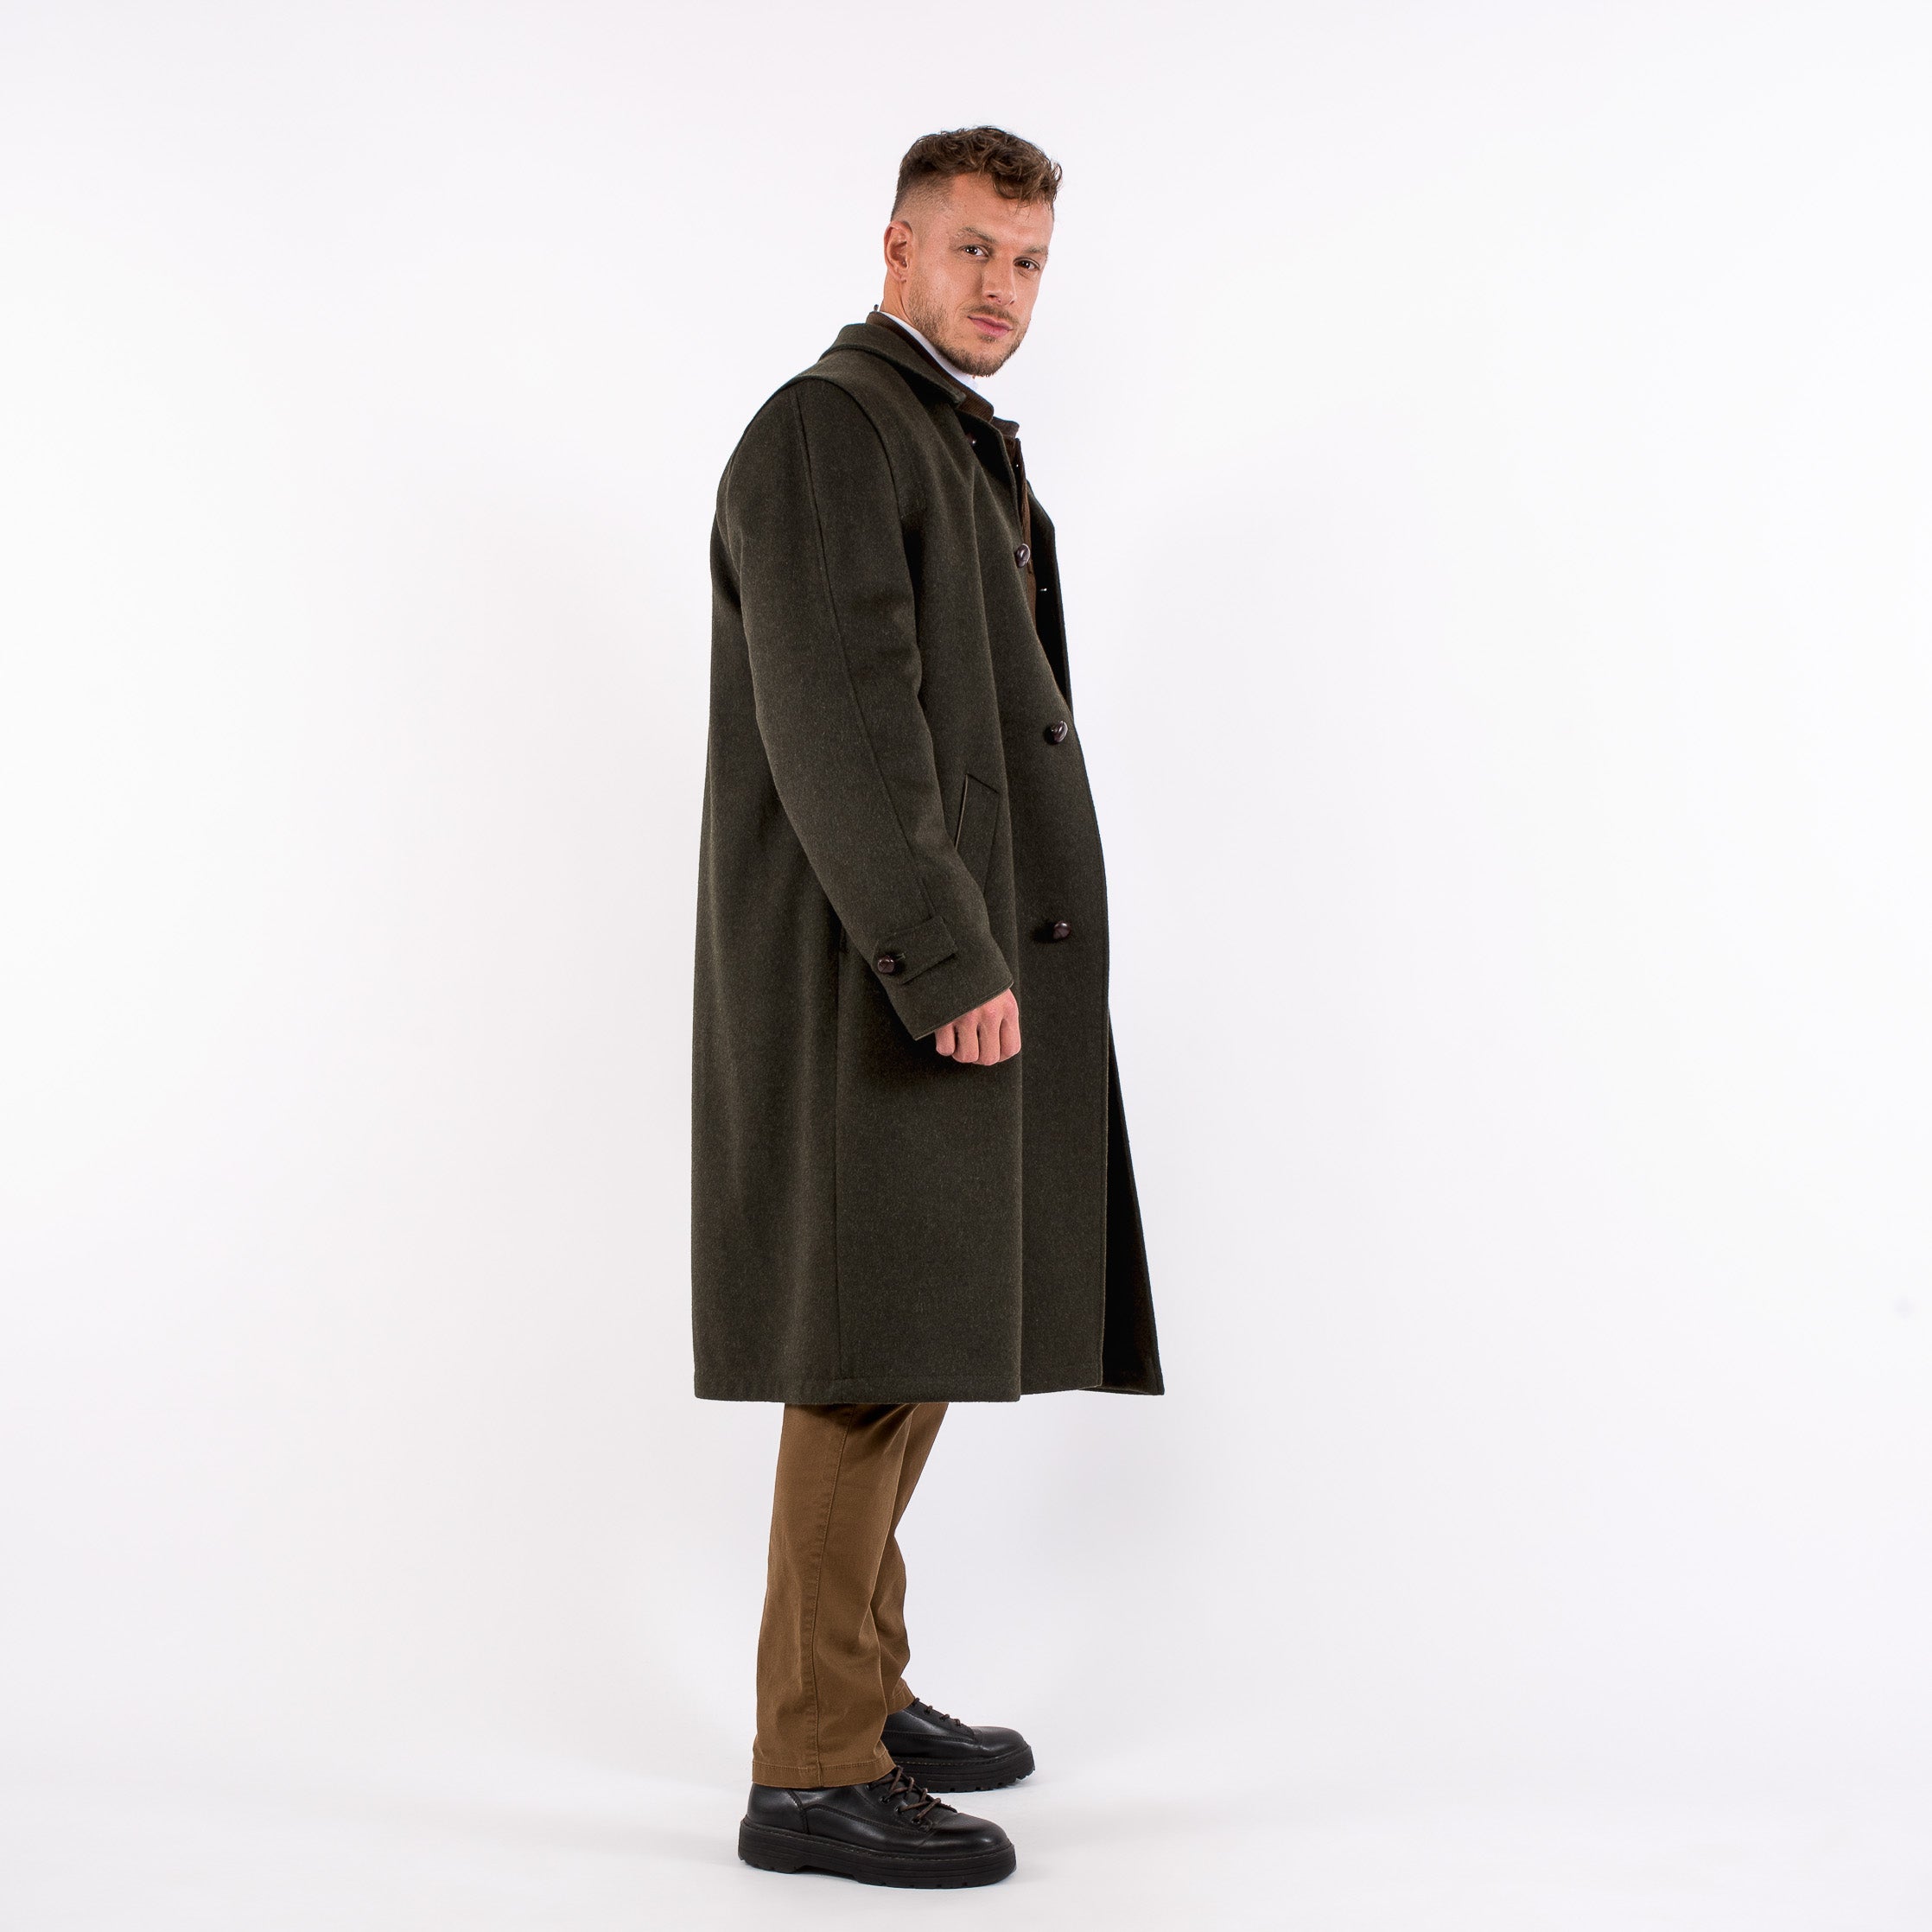 Sud Tiroler - Men's Loden Green Overcoat with ZIP - RWS - Robert W